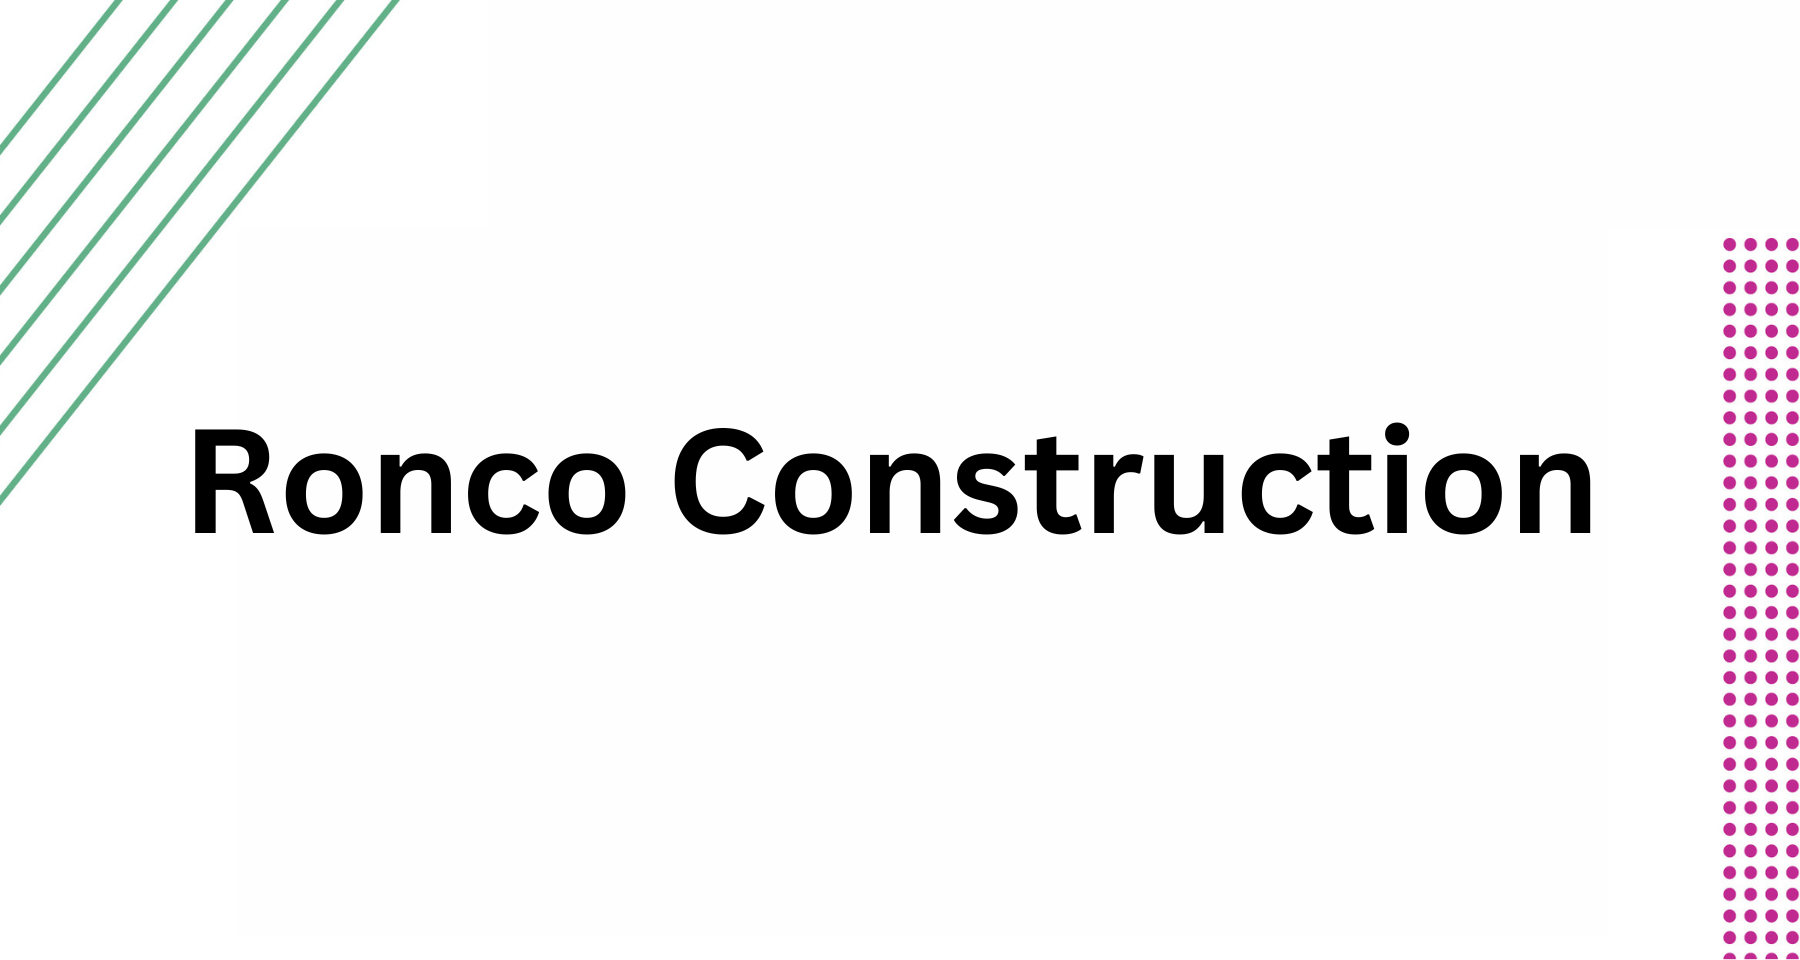 Ronco Construction